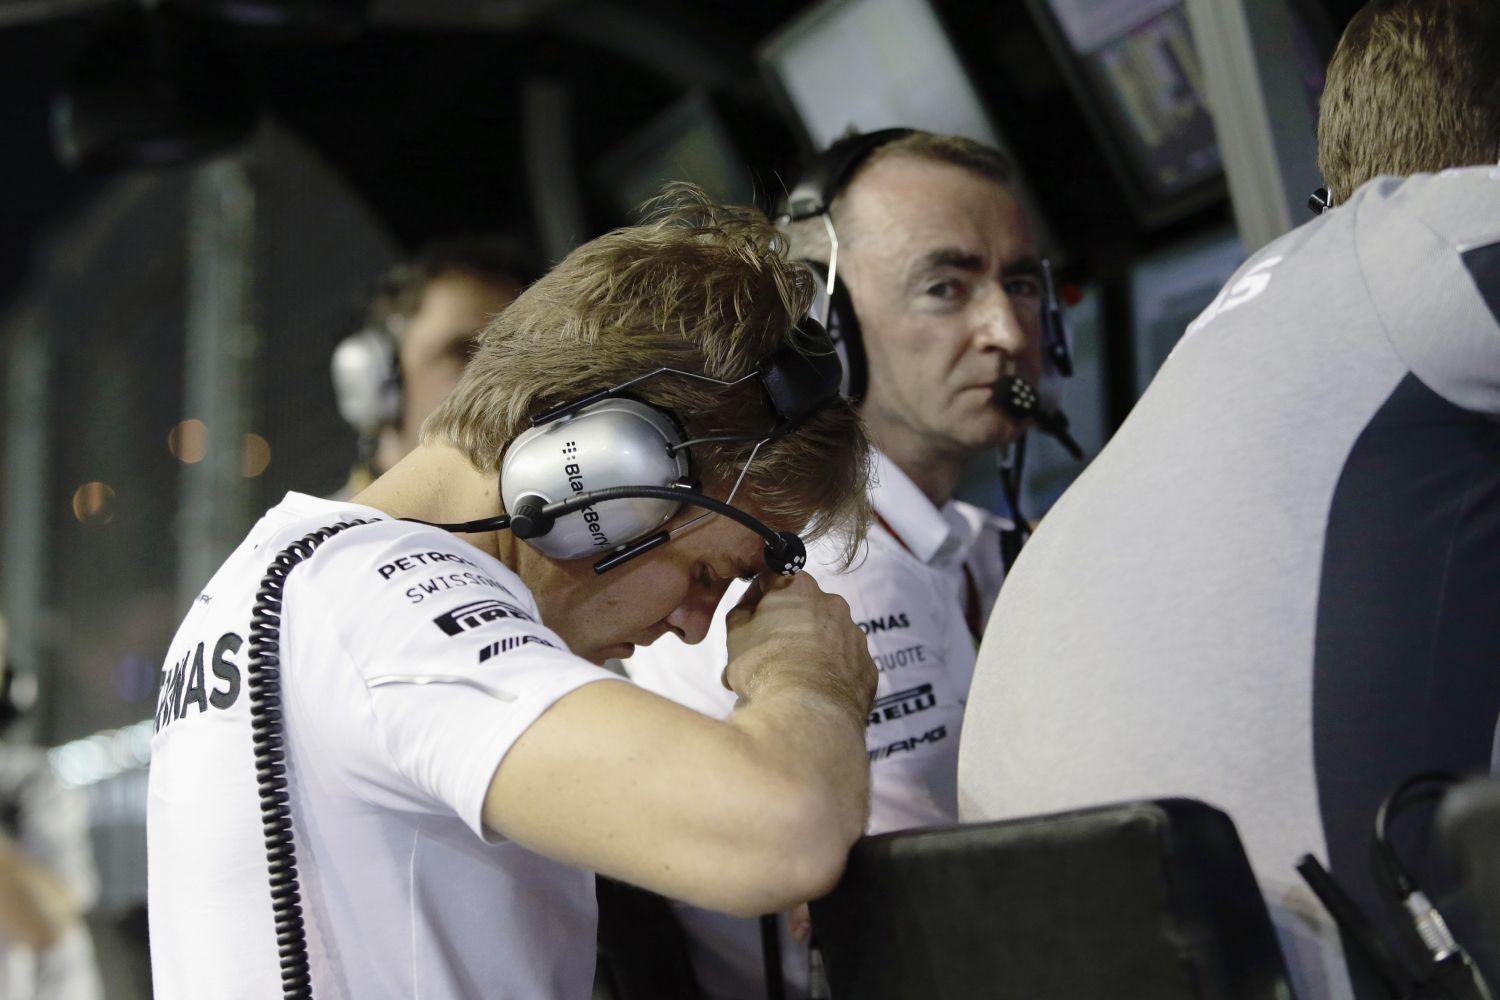 Rosbergnek műszaki hiba – a kormánby problémái – miatt fel kellett adnia a versenyt